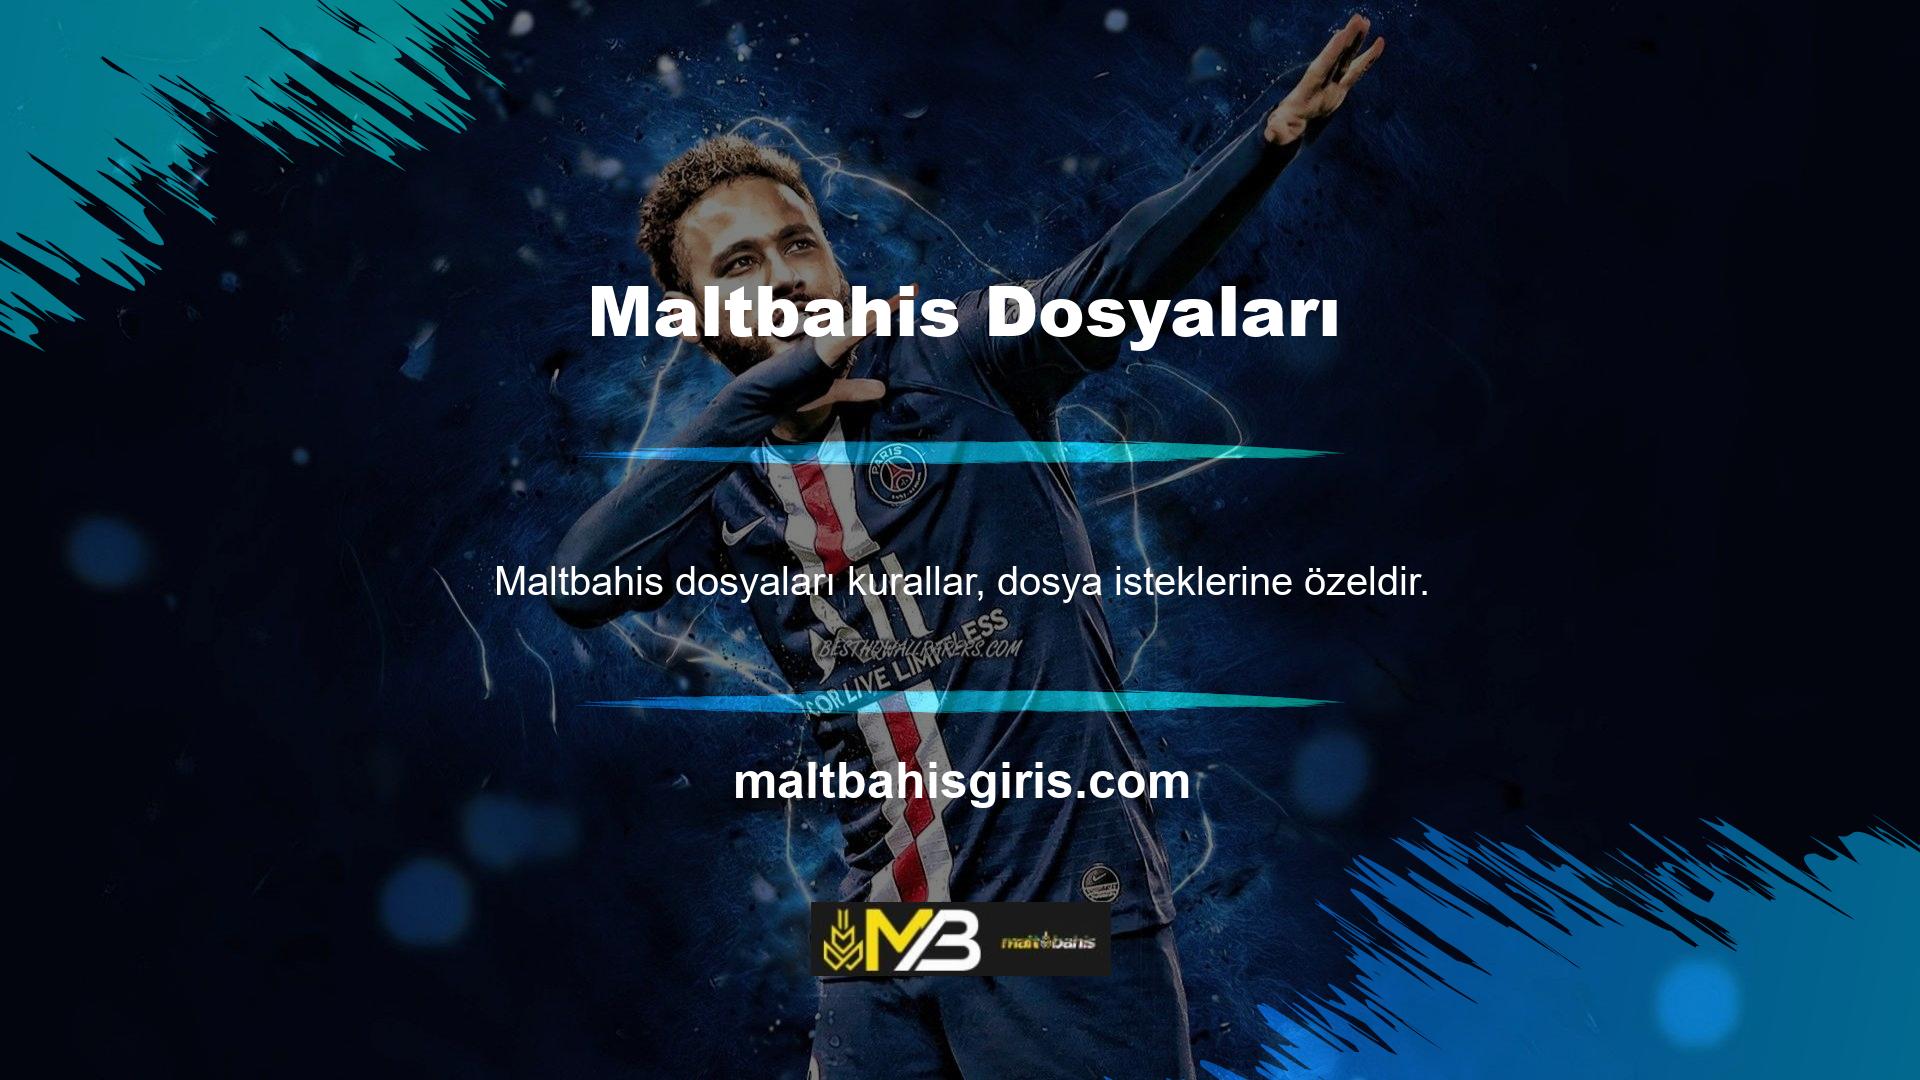 Maltbahis web sitesi, gerektiğinde ve herhangi bir nedenle belge talep etme hakkını saklı tutar